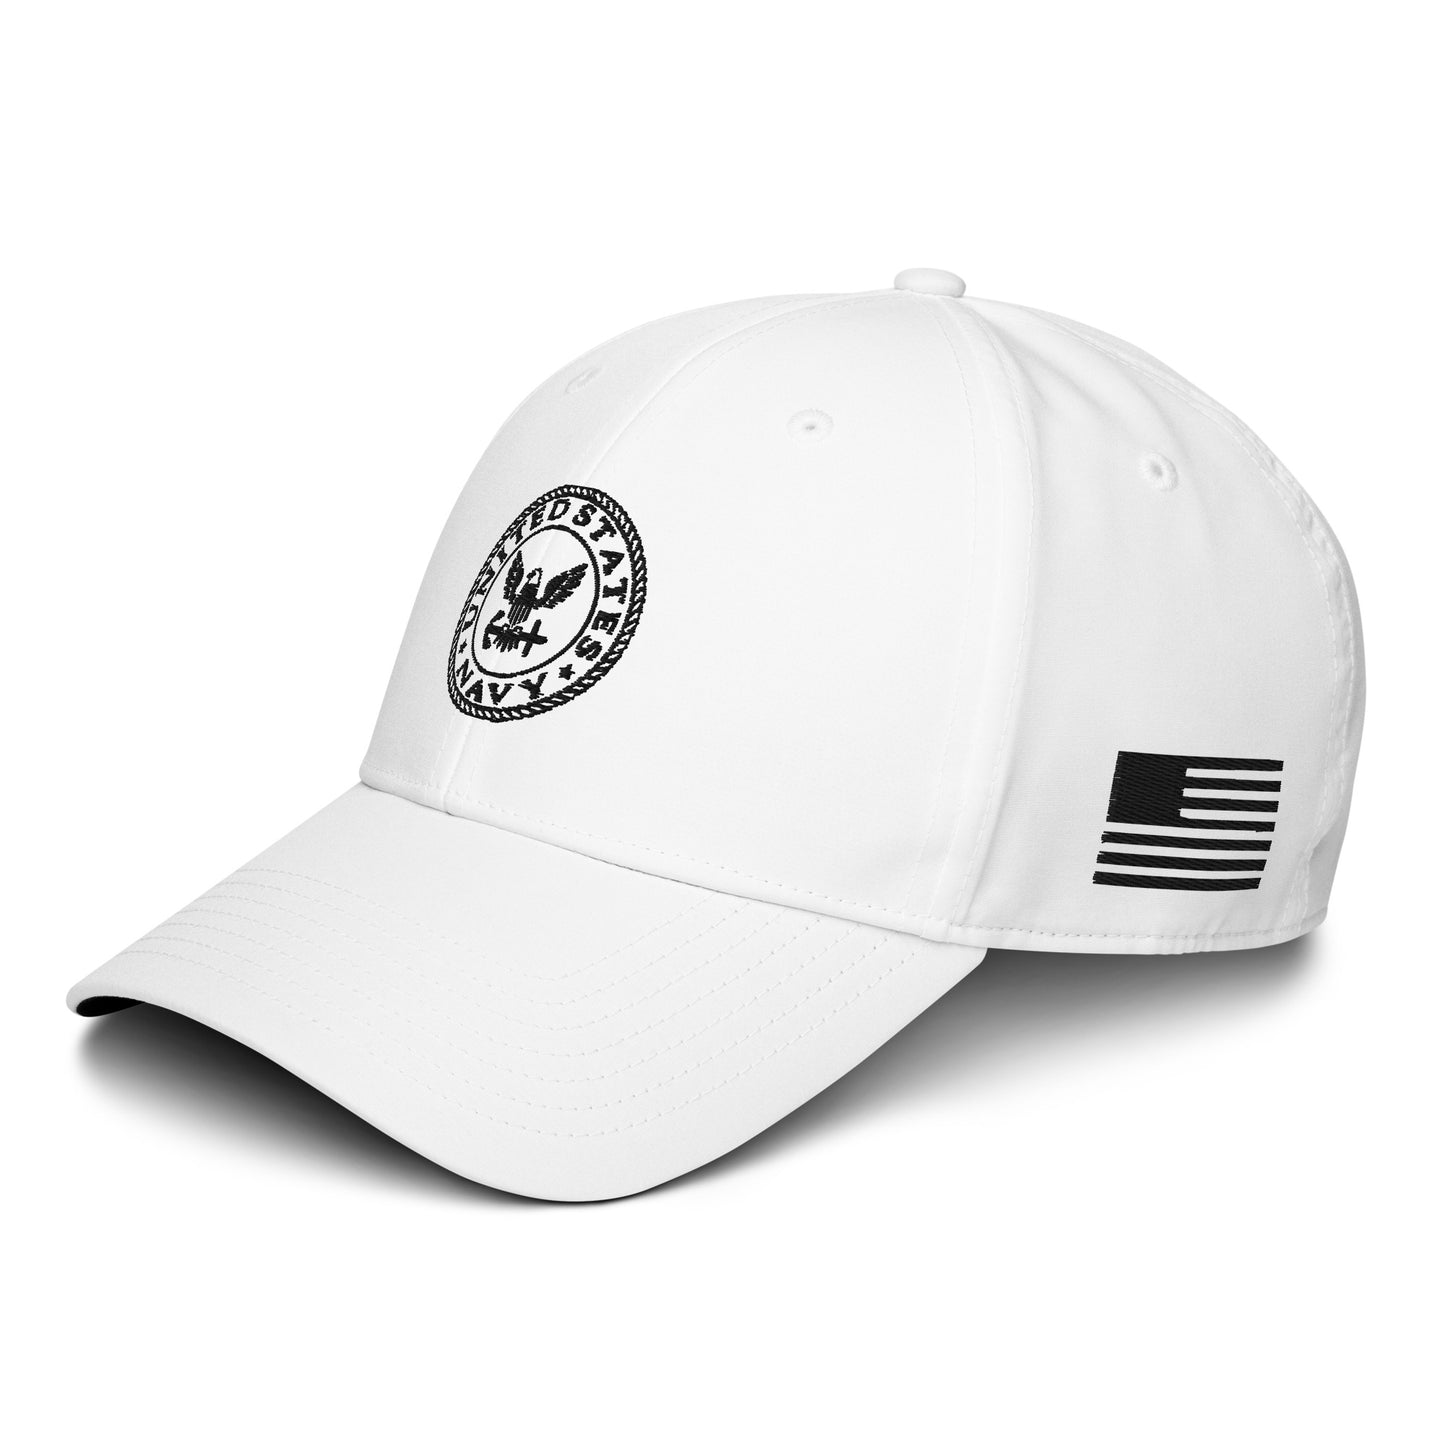 adidas dad hat - U.S. Navy (in White)